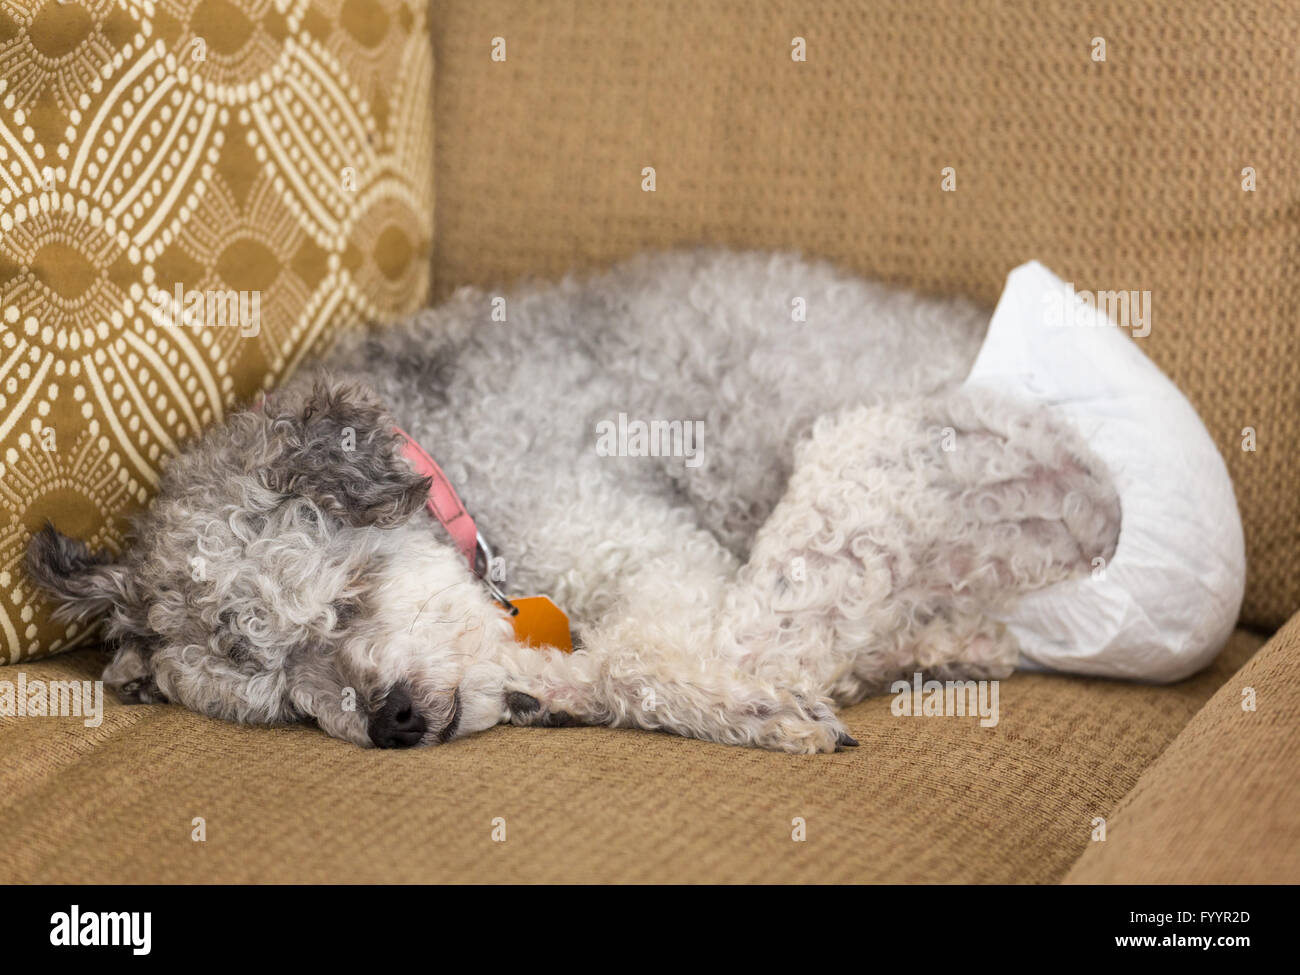 Viejo perro gris usando un pañal perruno Foto de stock